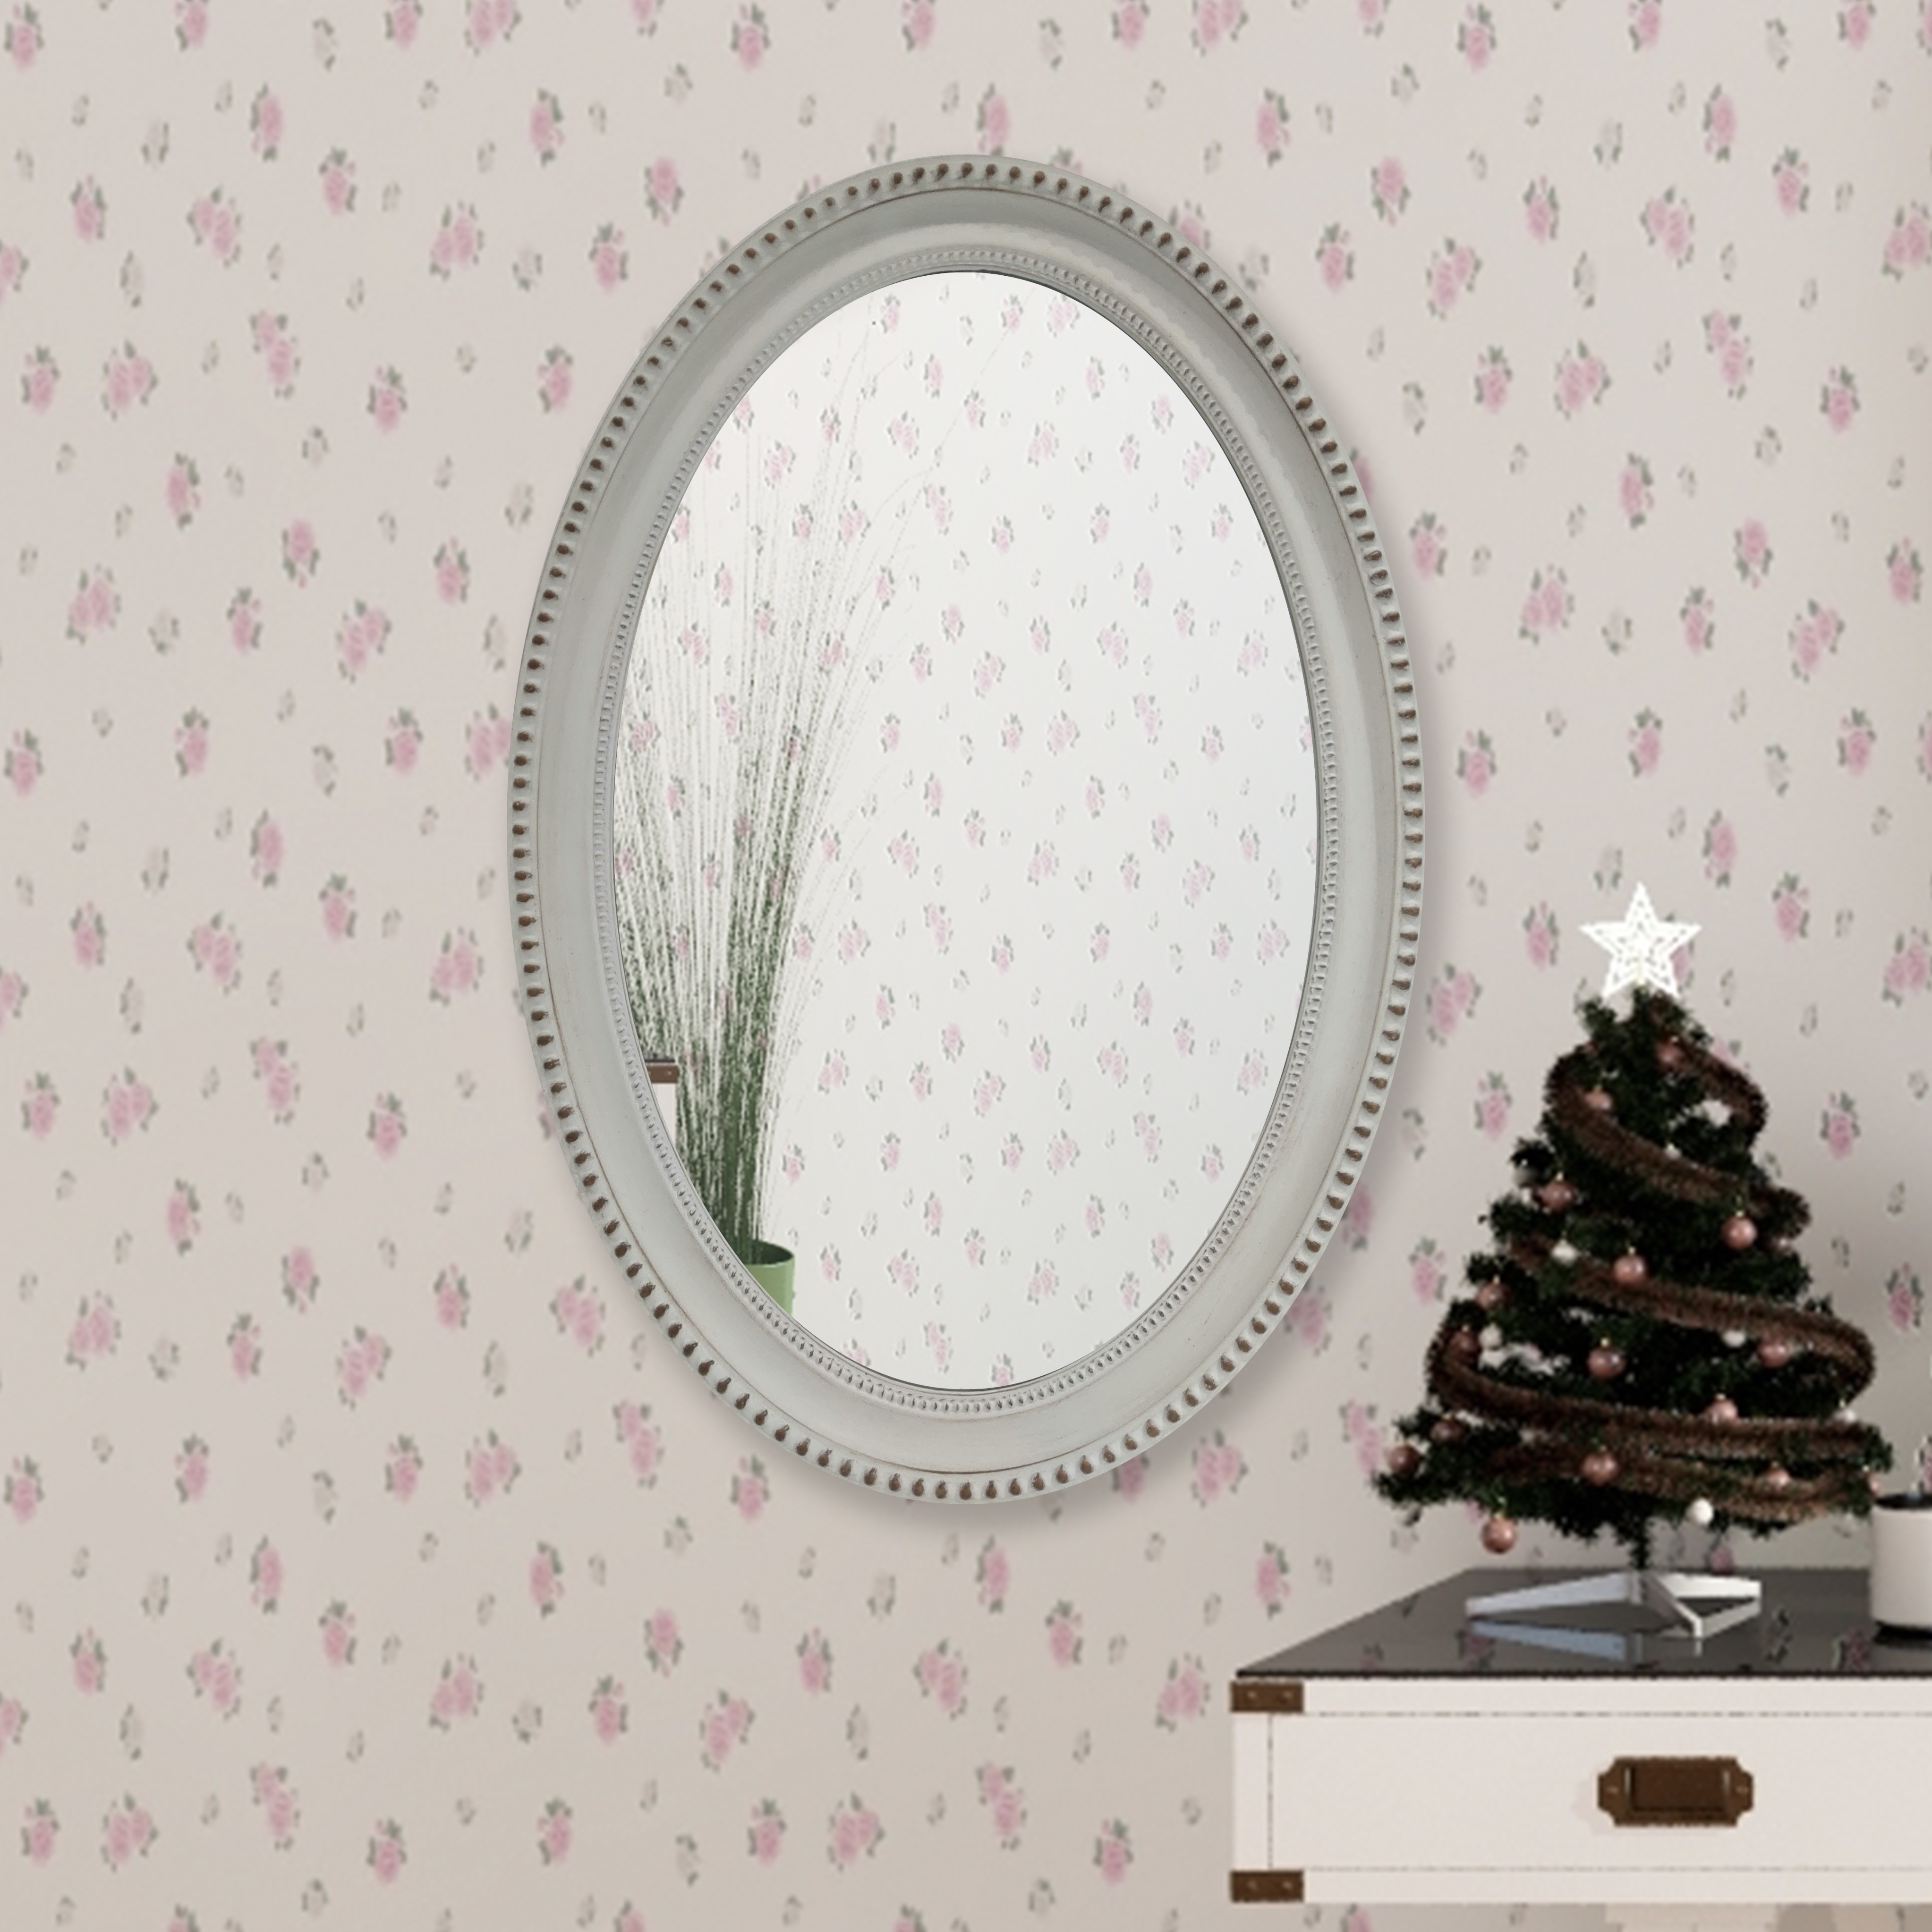 white mirror on white wall